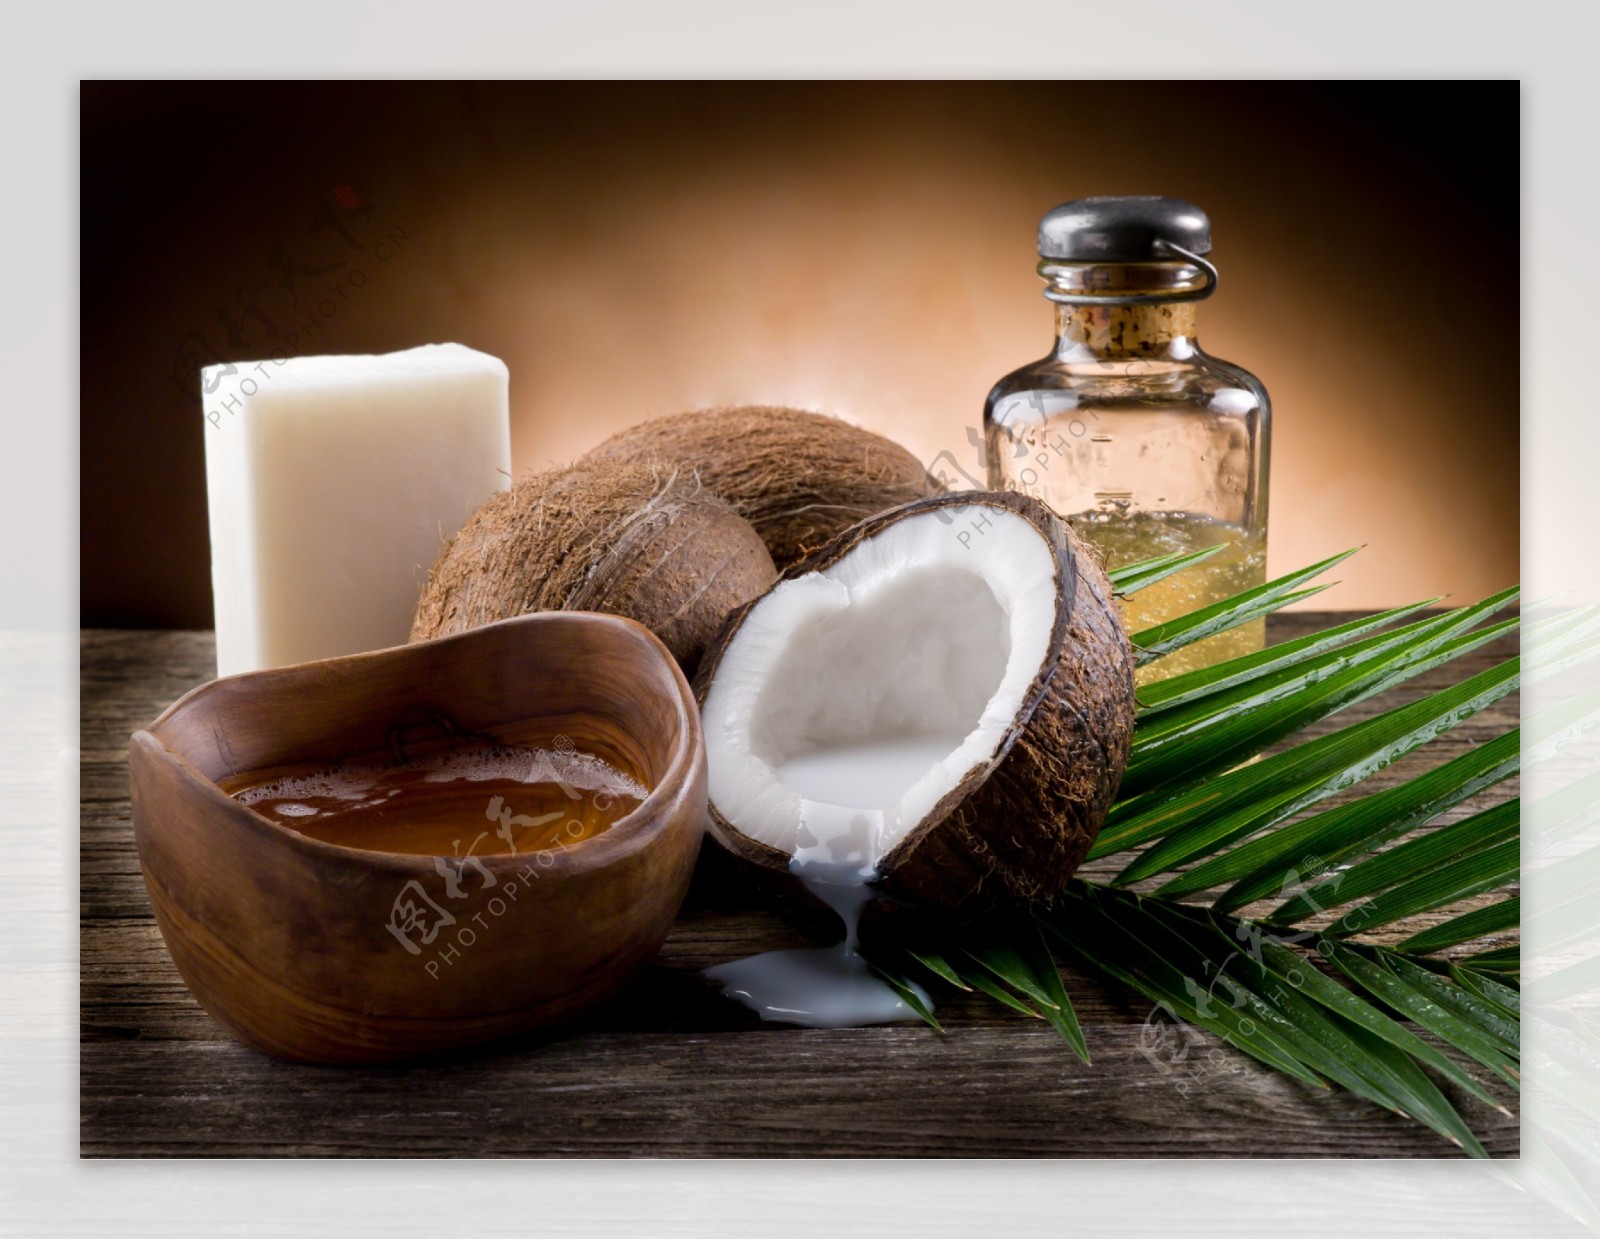 天然椰子油肥皂图片